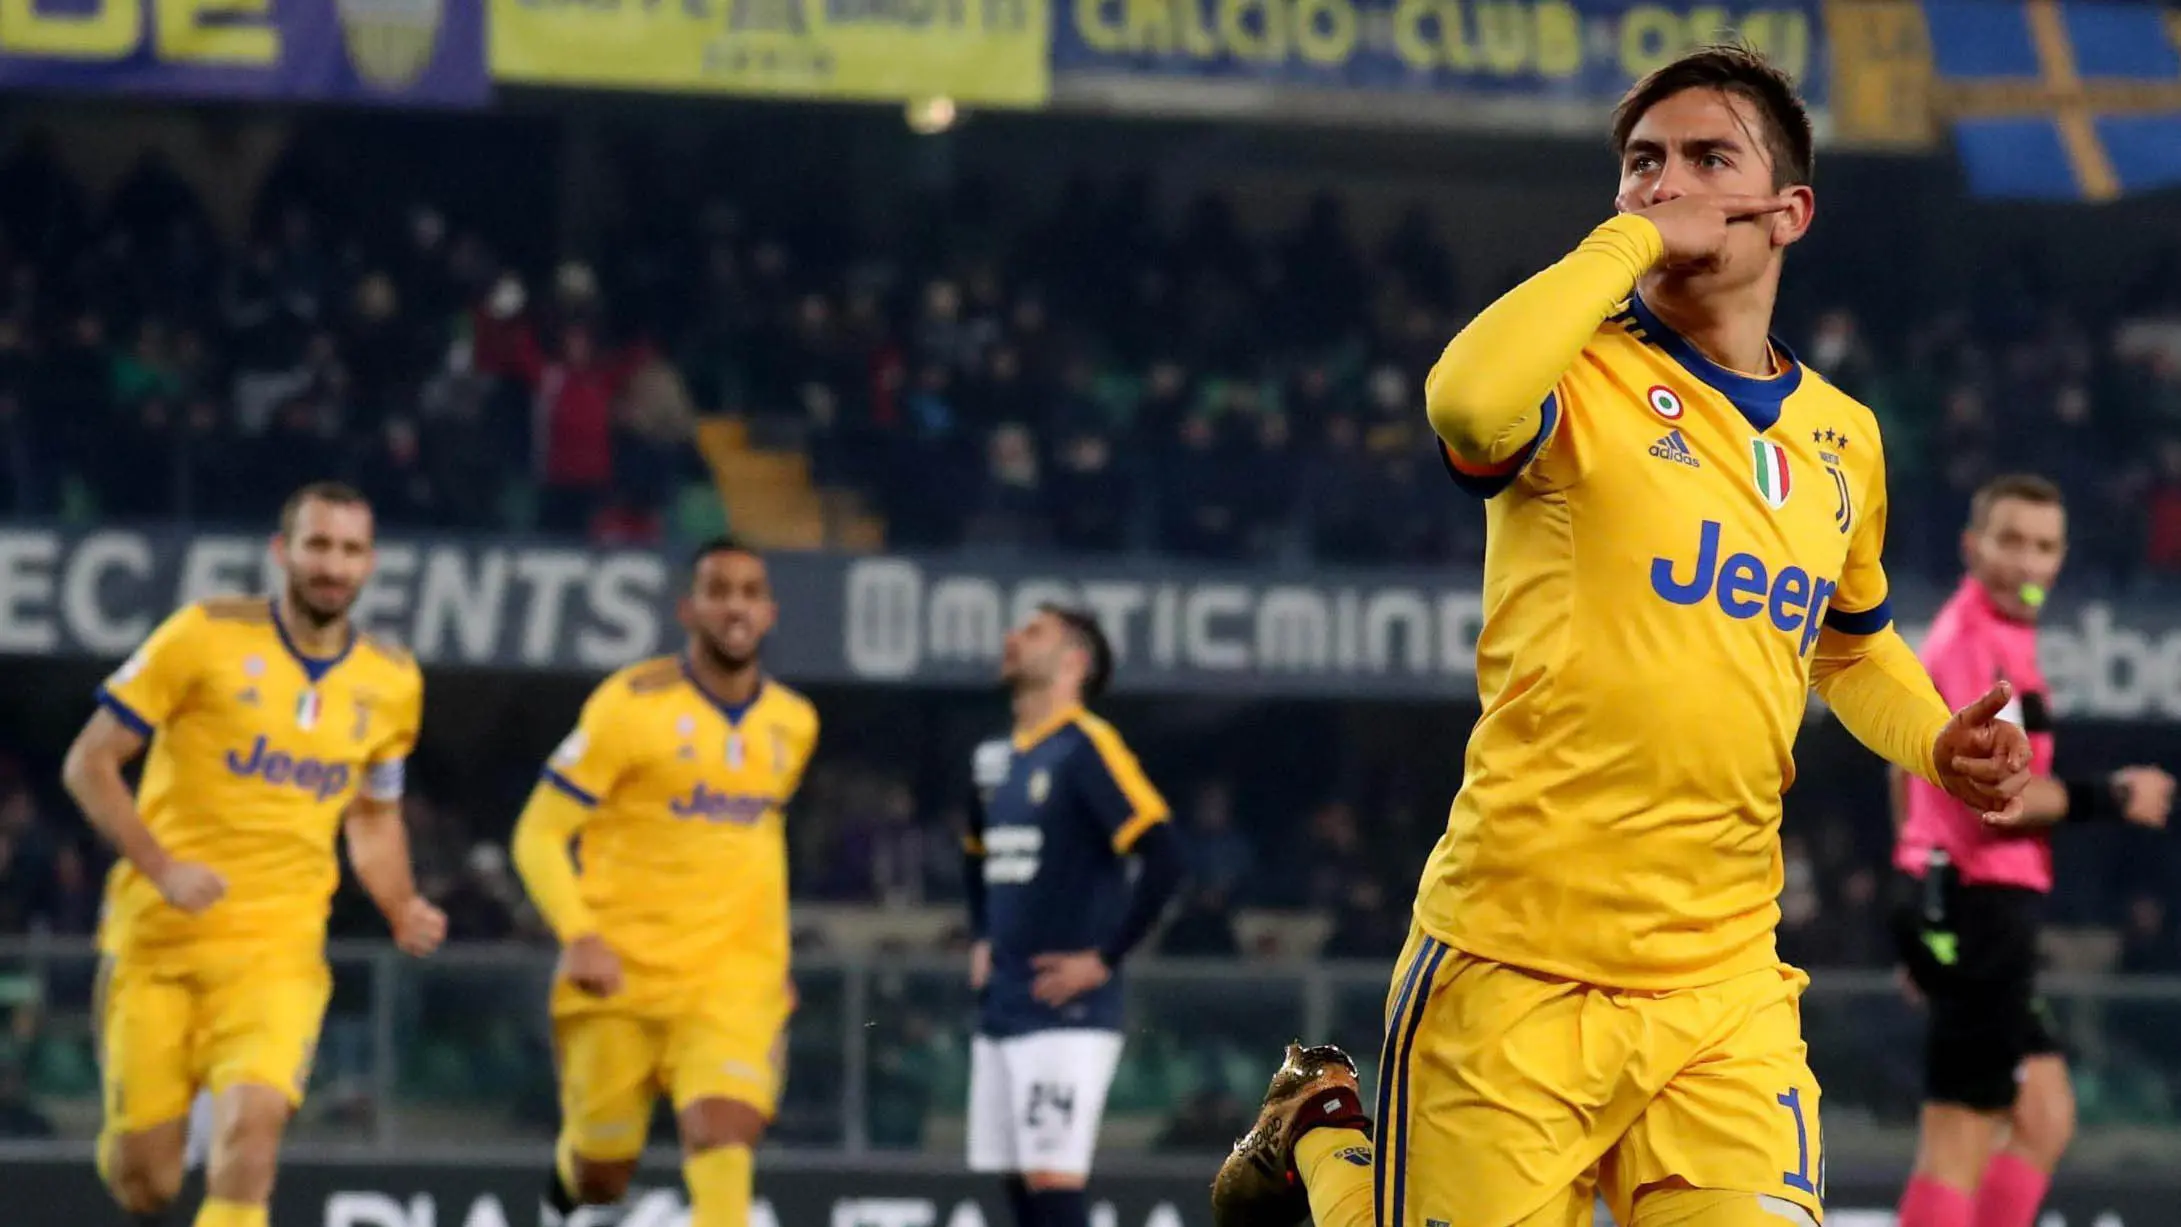 Striker Juventus, Paulo Dybala, melakukan selebrasi usai mencetak gol ke gawang Hellas Verona pada laga Serie A, Italia, di Stadion Marc'Antonio Bentegodi, Sabtu,(30/12/2017). Juventus menang 3-1 atas Hellas Verona. (AP/Filippo Venezia)